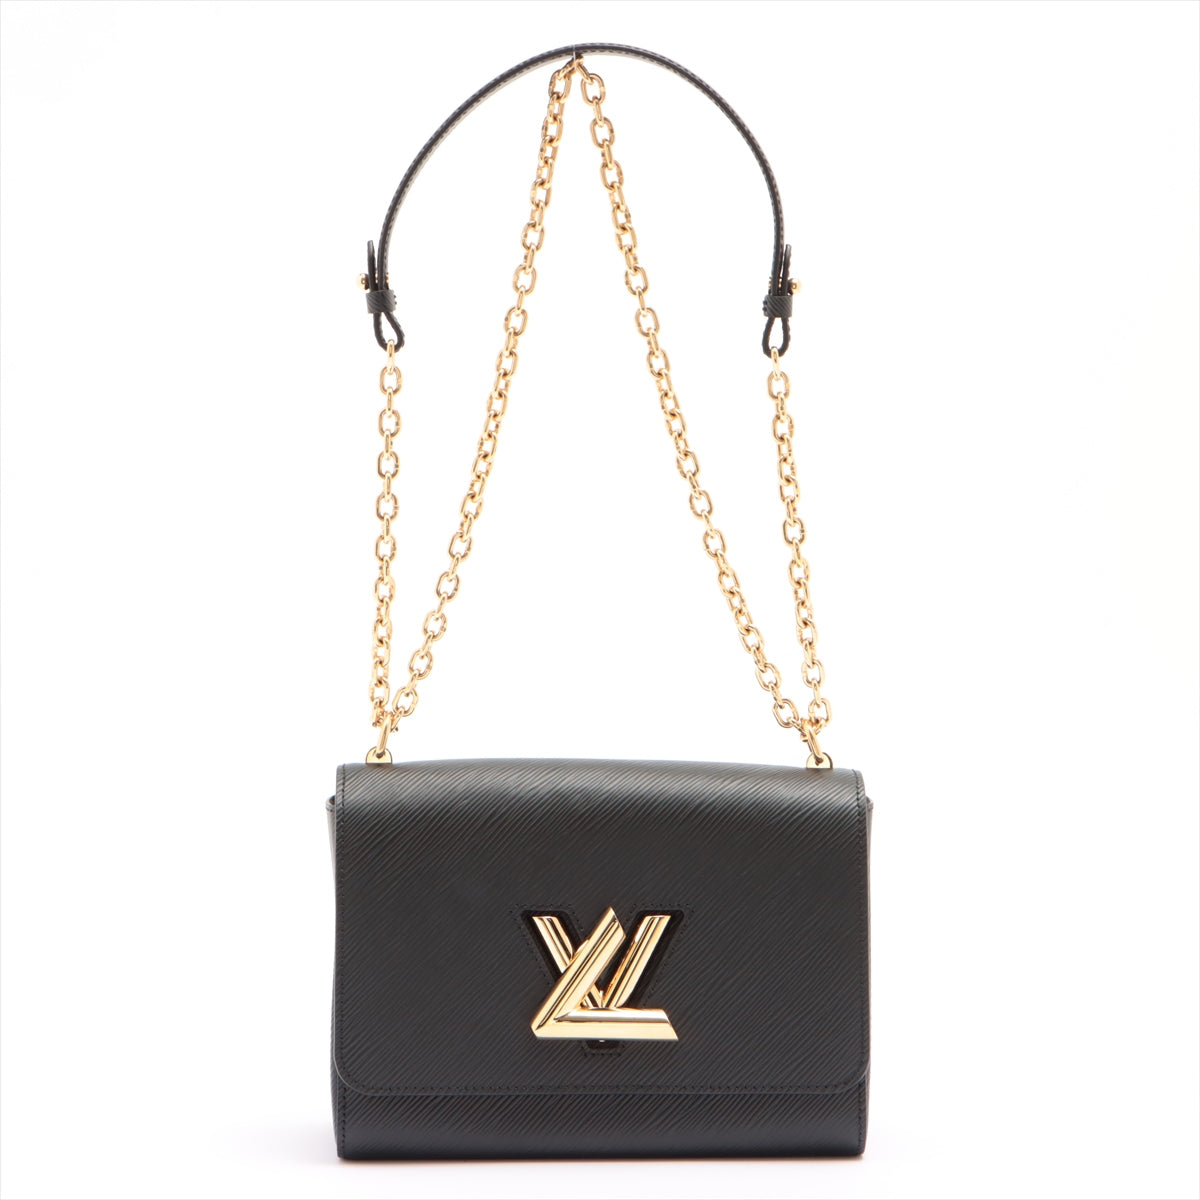 Twist: LV Brand Mark Twist Lock Handbags